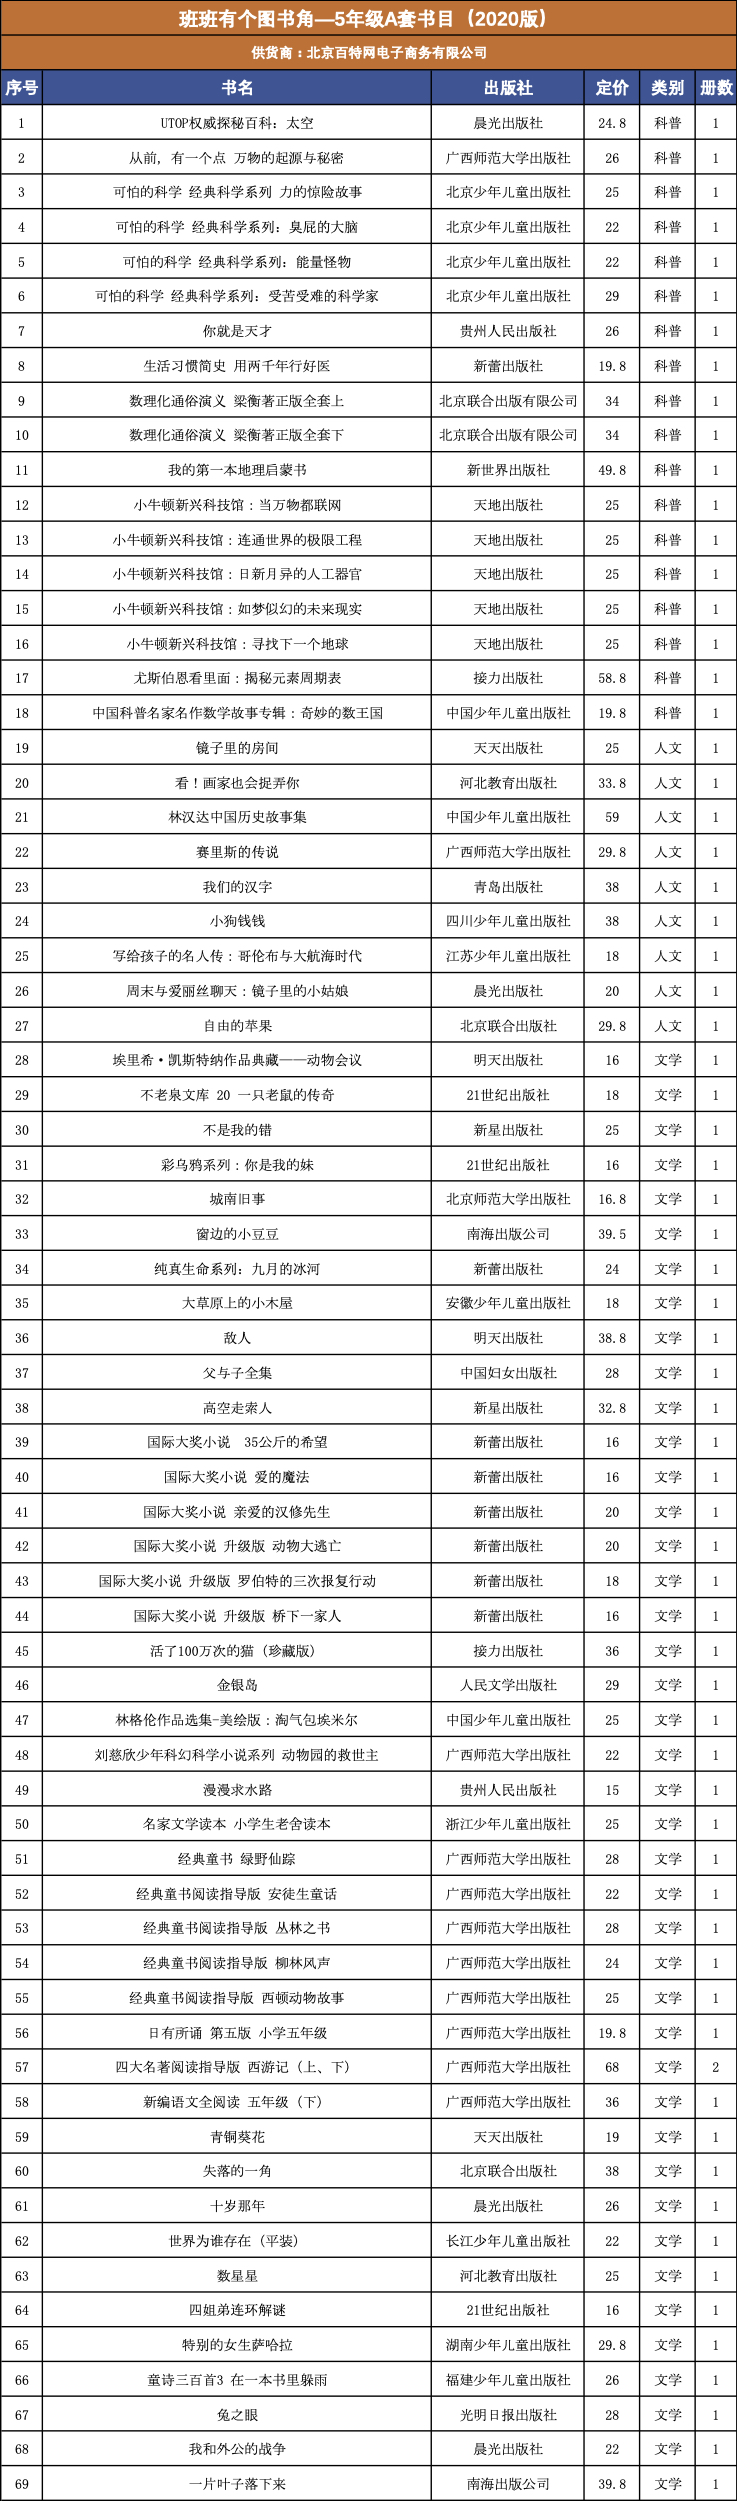 （北京中图网）班班有个图书角—5年级A套书目（2020.06版）.jpg